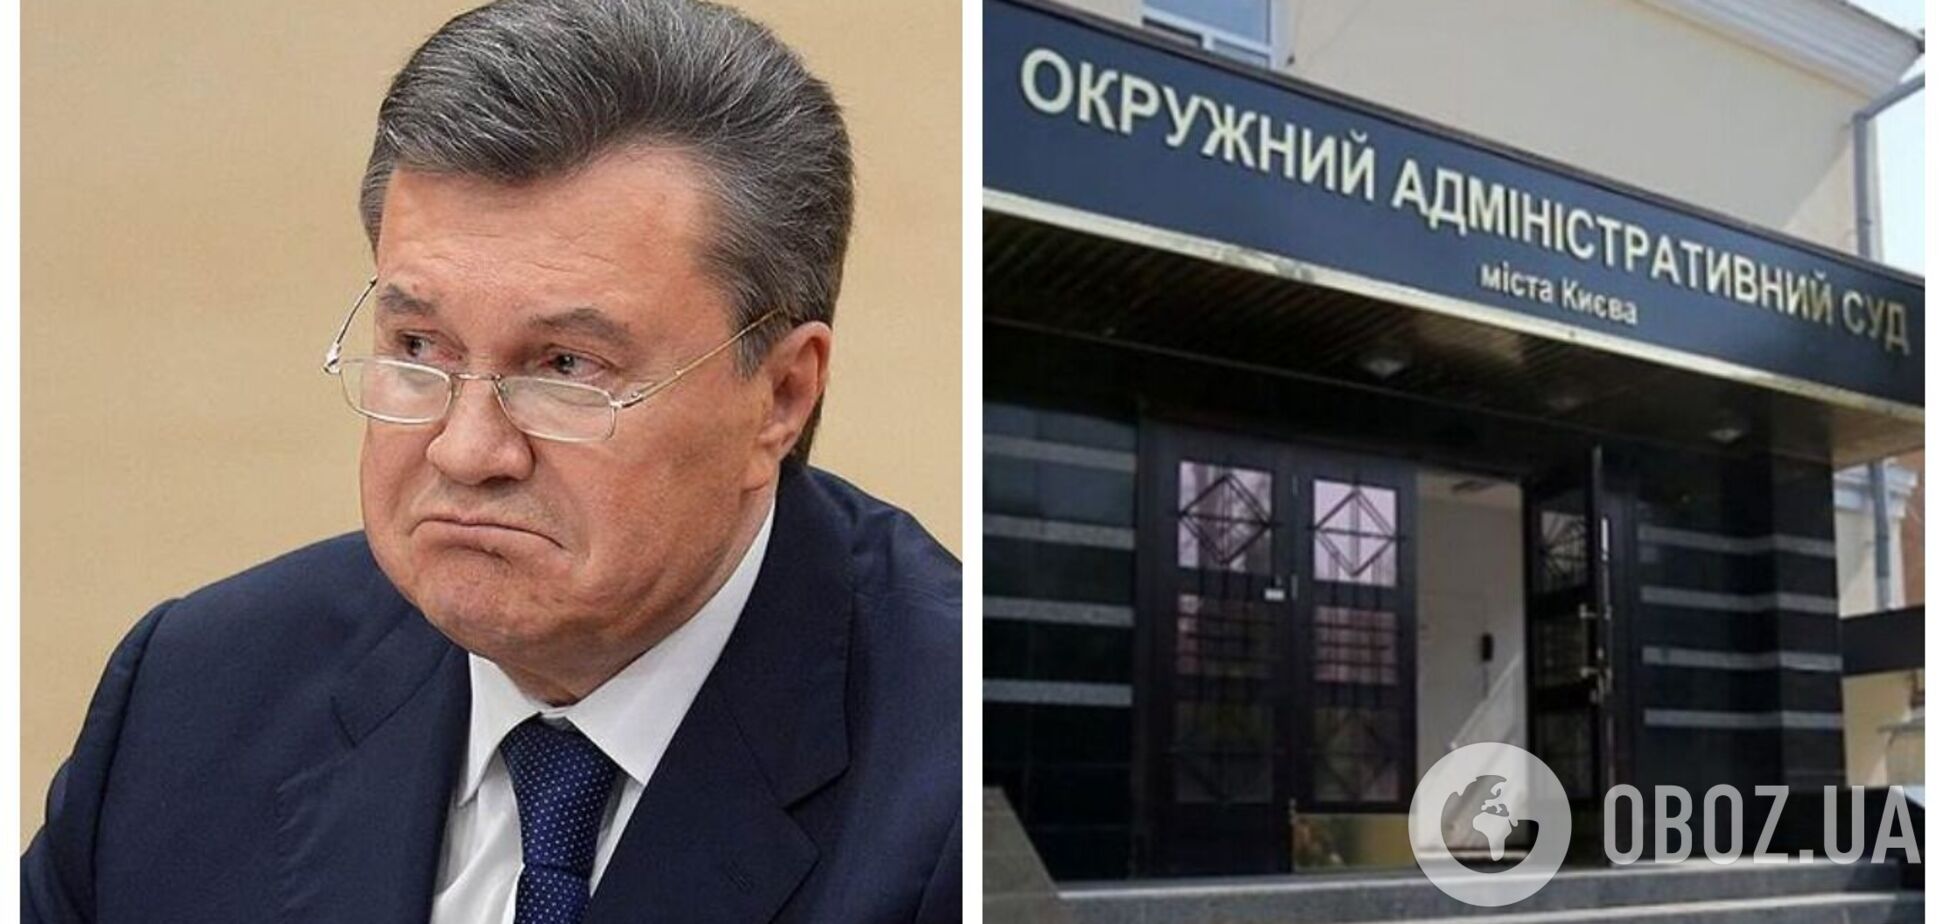 Янукович намагається через суд оскаржити усунення з посади президента України